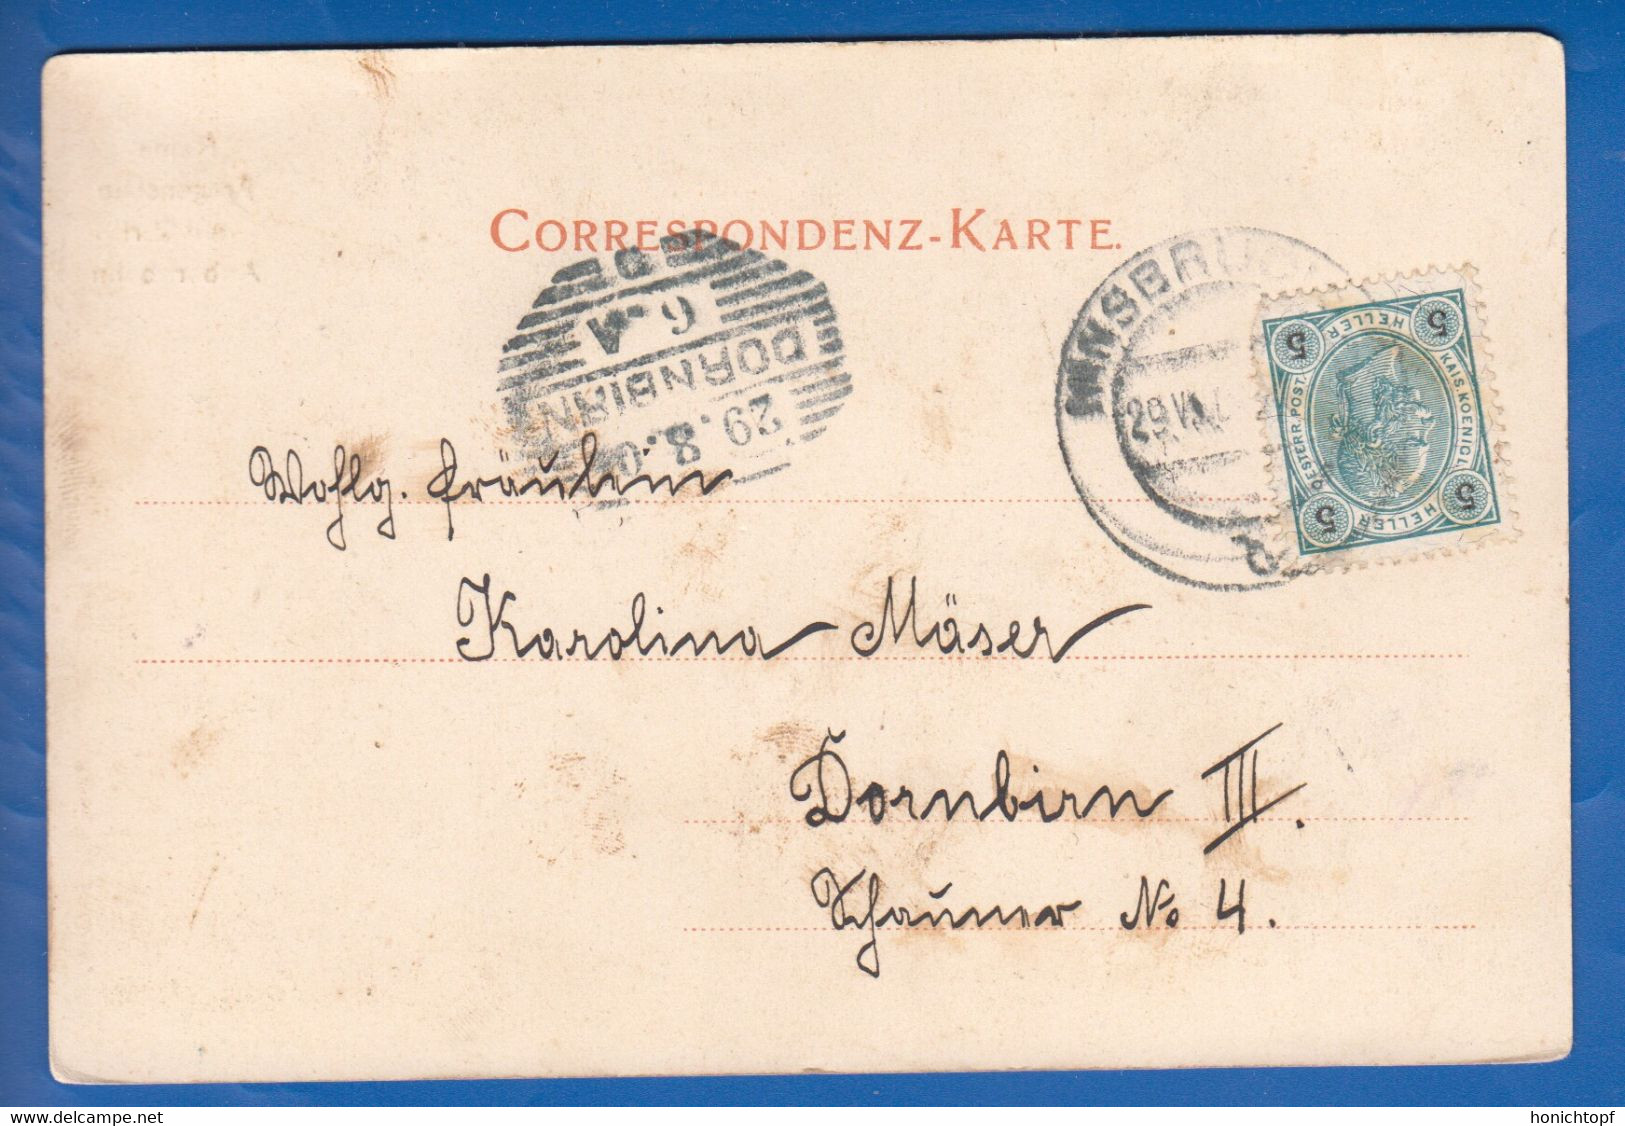 Österreich; Zirl; Ruine Fragenstein; Arlbergbahn; 1904 - Zirl